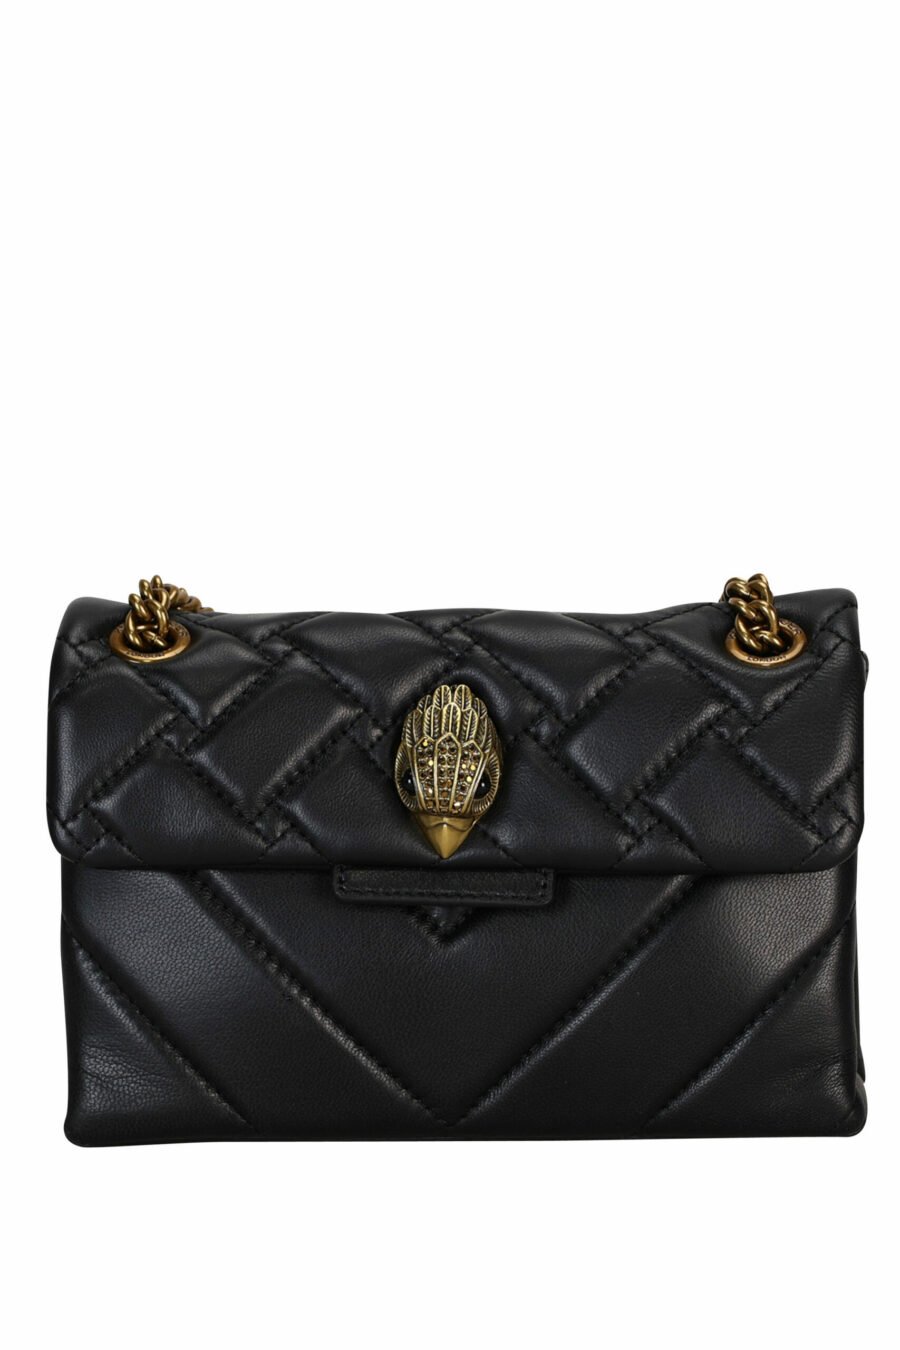 Mini sac à bandoulière matelassé noir avec logo aigle doré avec cristaux noirs - 5057720813637 scaled